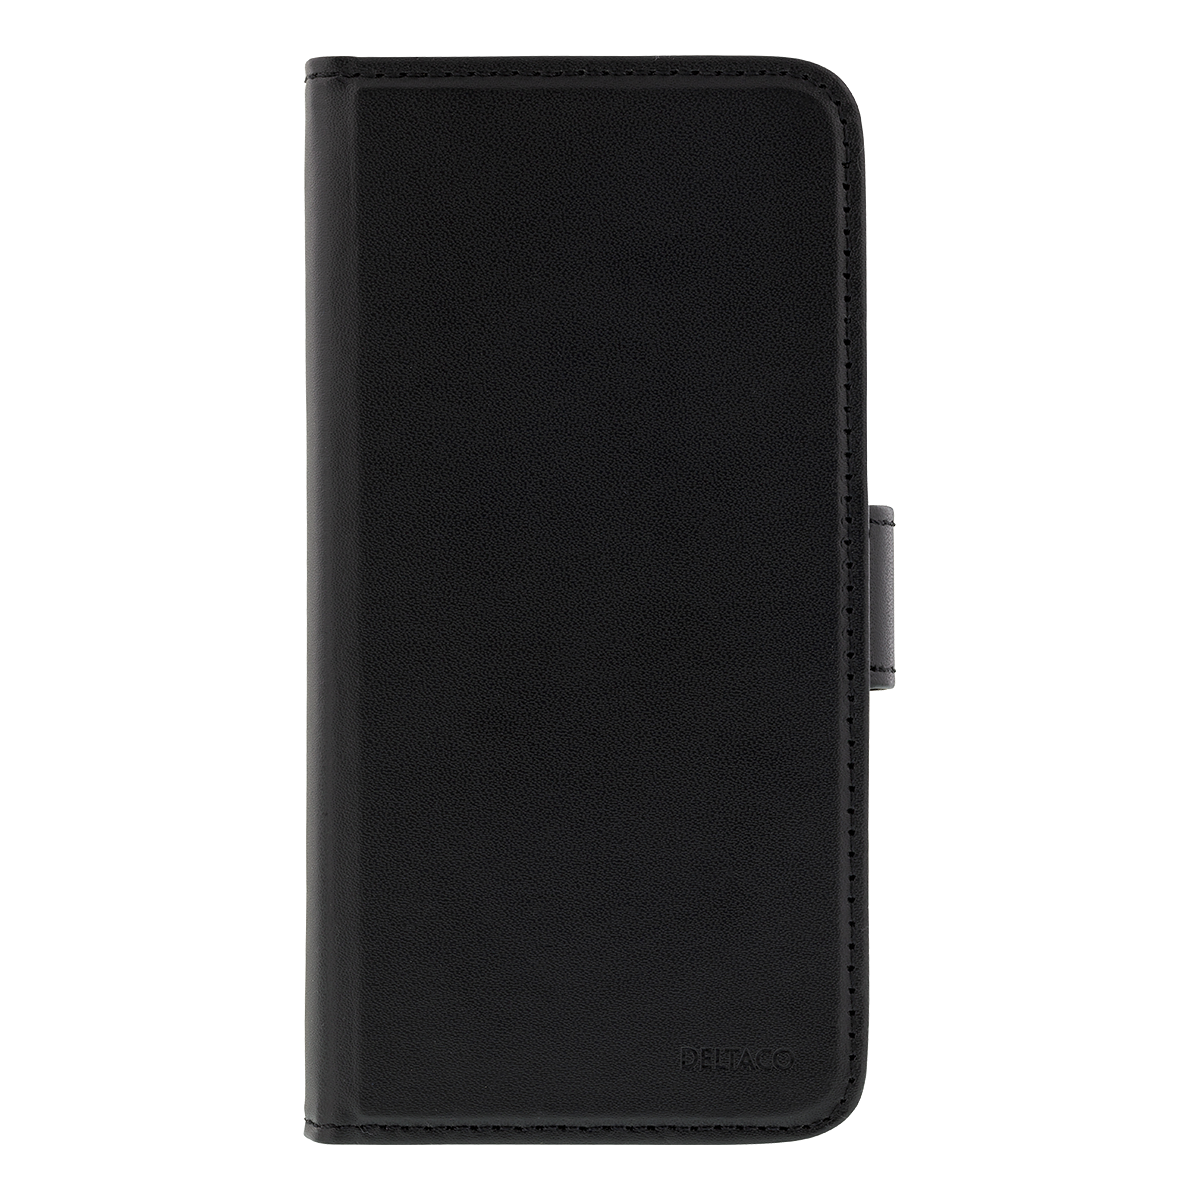 Deltaco plånboksfodral för iPhone Xs Max, magnetskal, svart